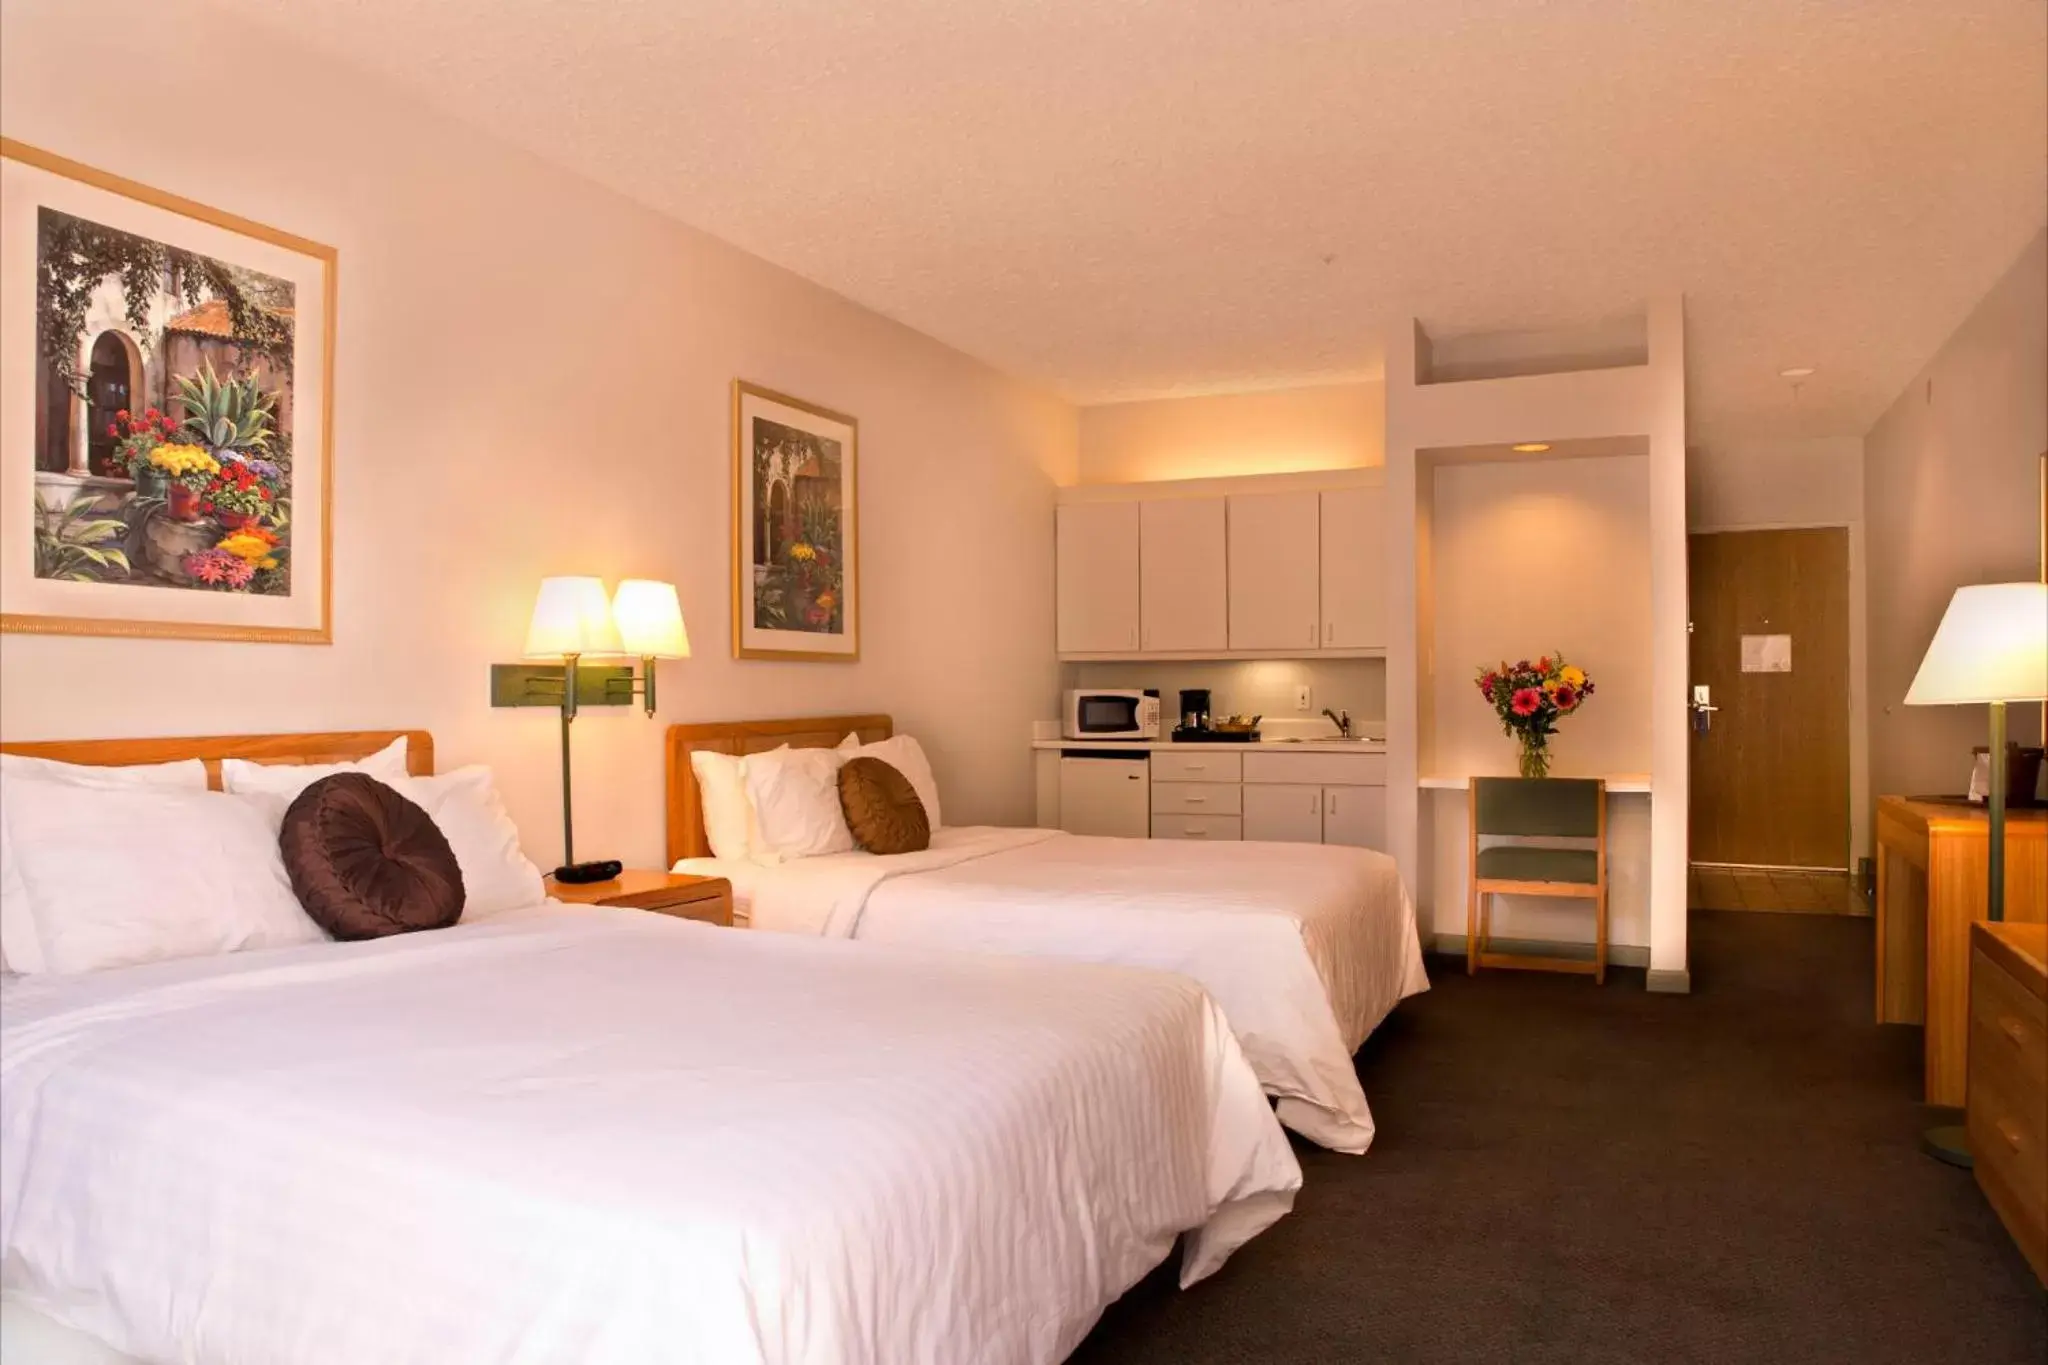 Bed in Hotel Buena Vista - San Luis Obispo